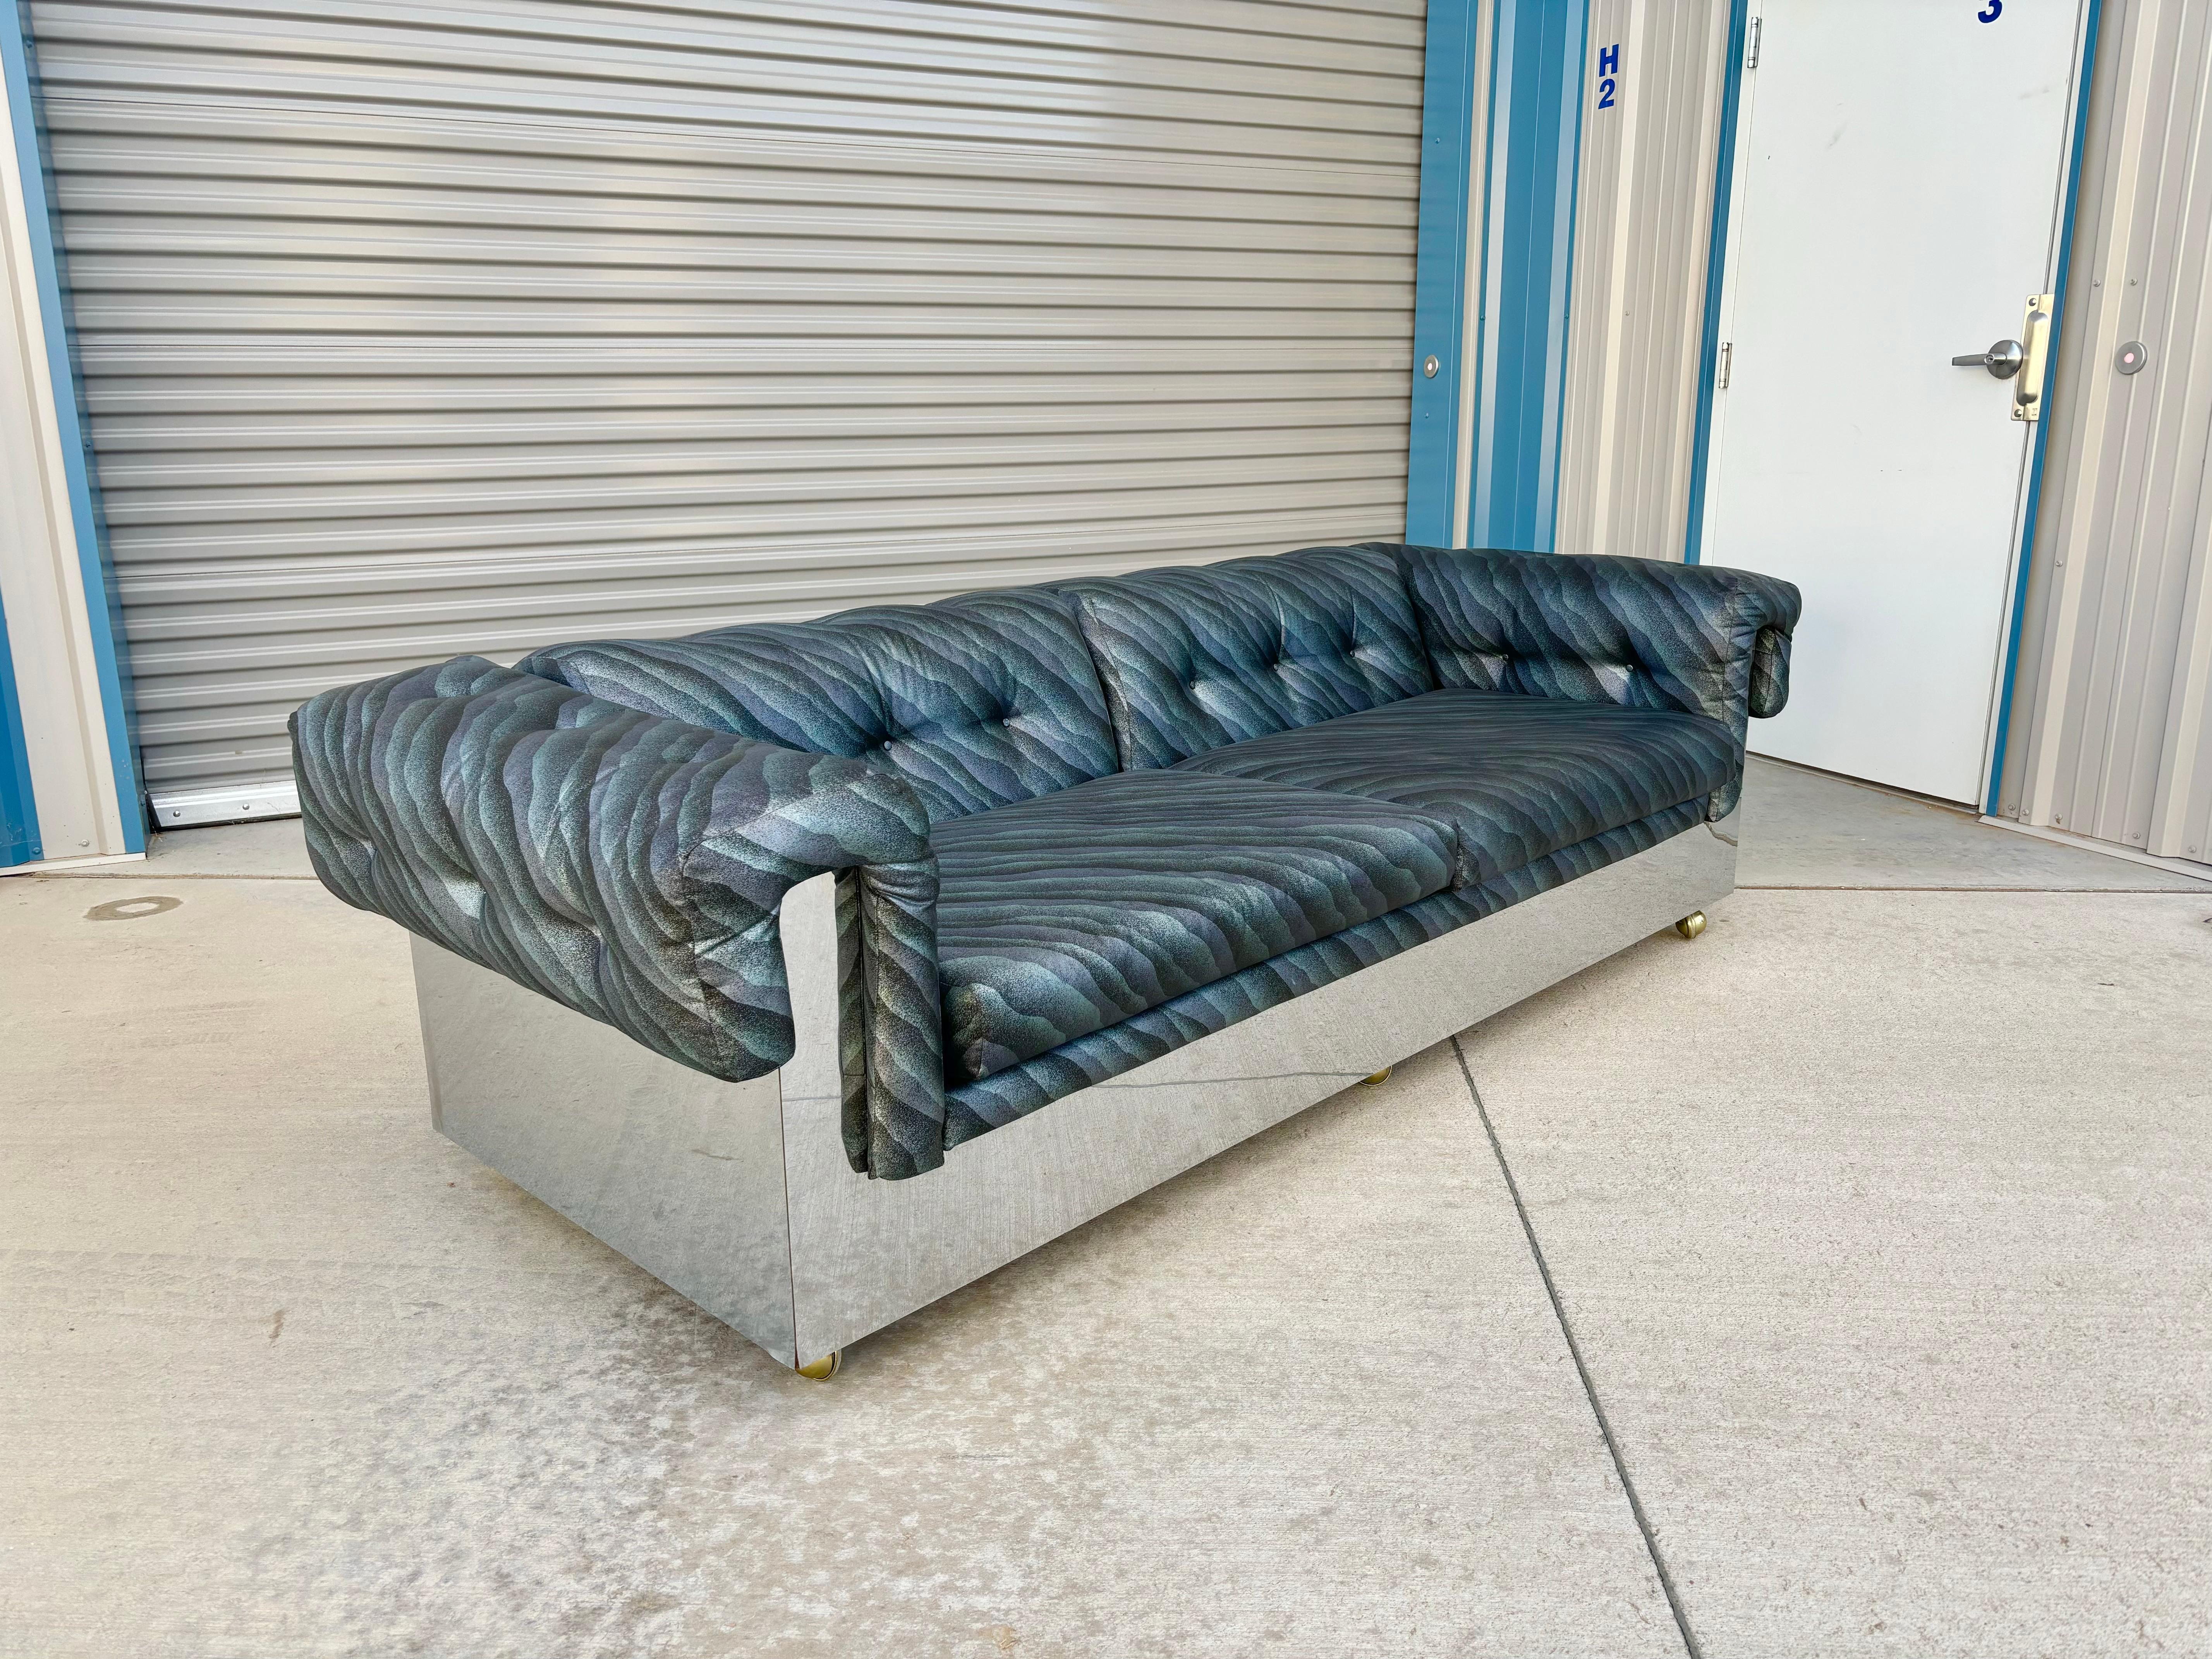 Ce canapé chromé du milieu du siècle a été conçu par Milo Baughman aux États-Unis vers les années 1970. Son cadre chromé enveloppant et élégant ajoutera une touche de sophistication à tout espace de vie. La mobilité du canapé est renforcée par ses